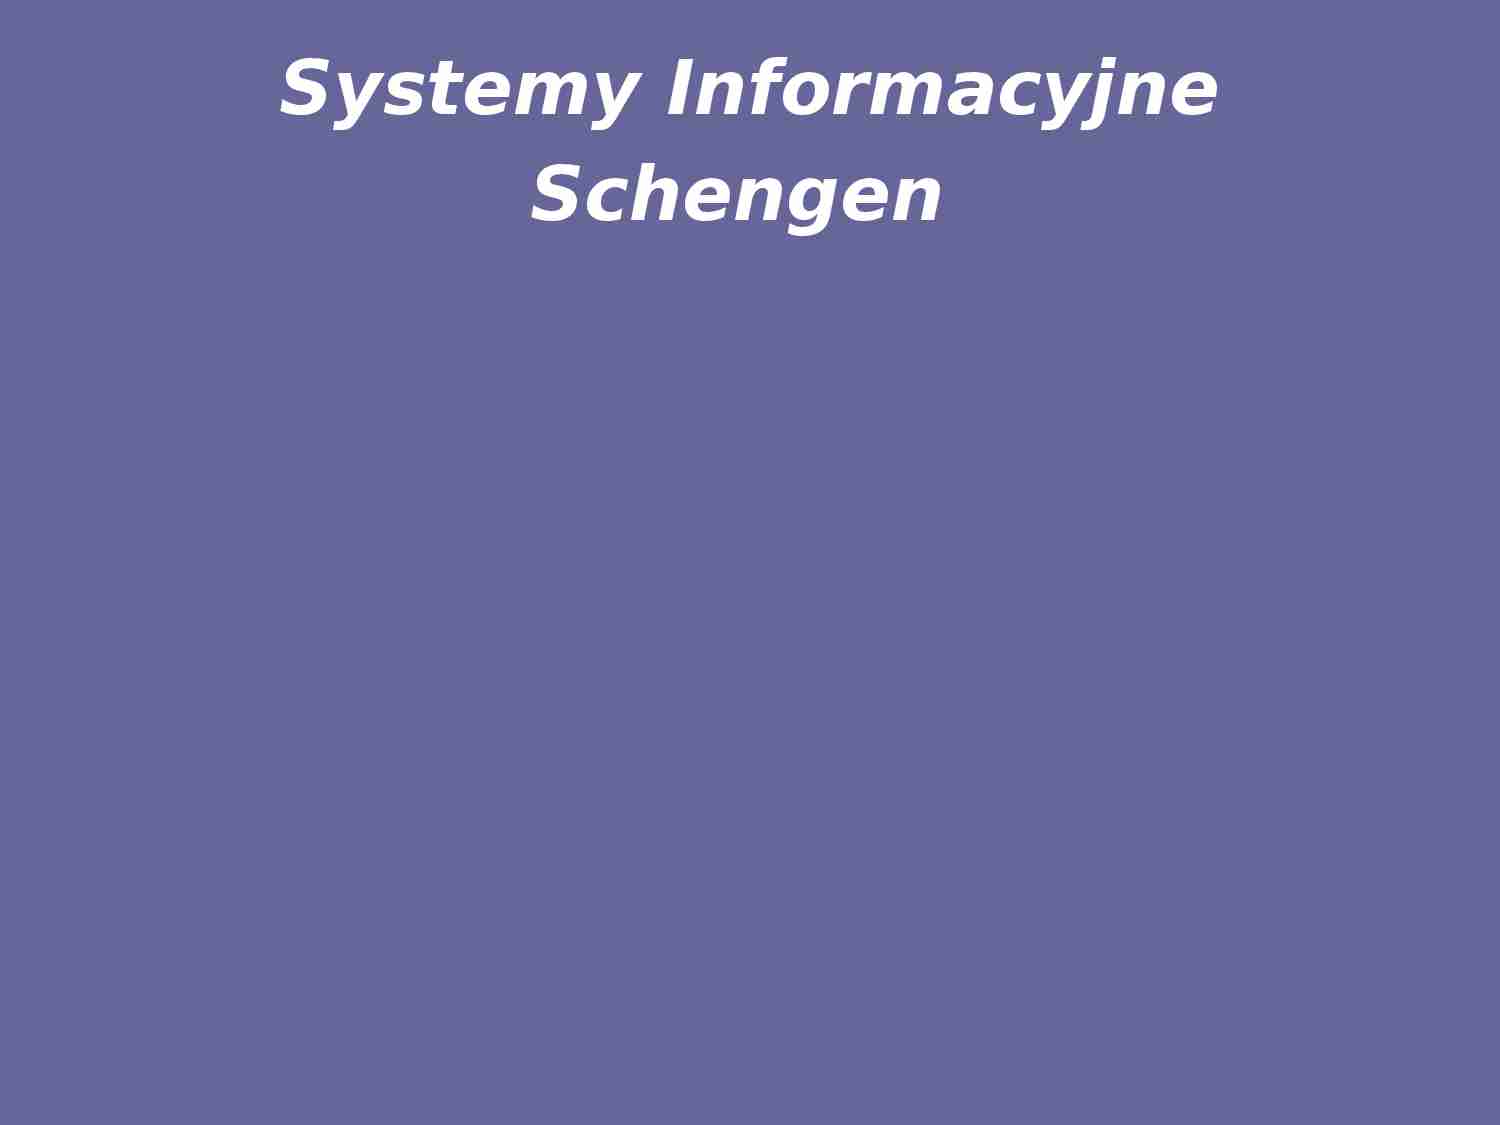 Systemy Informacyjne Schengen - strona 1